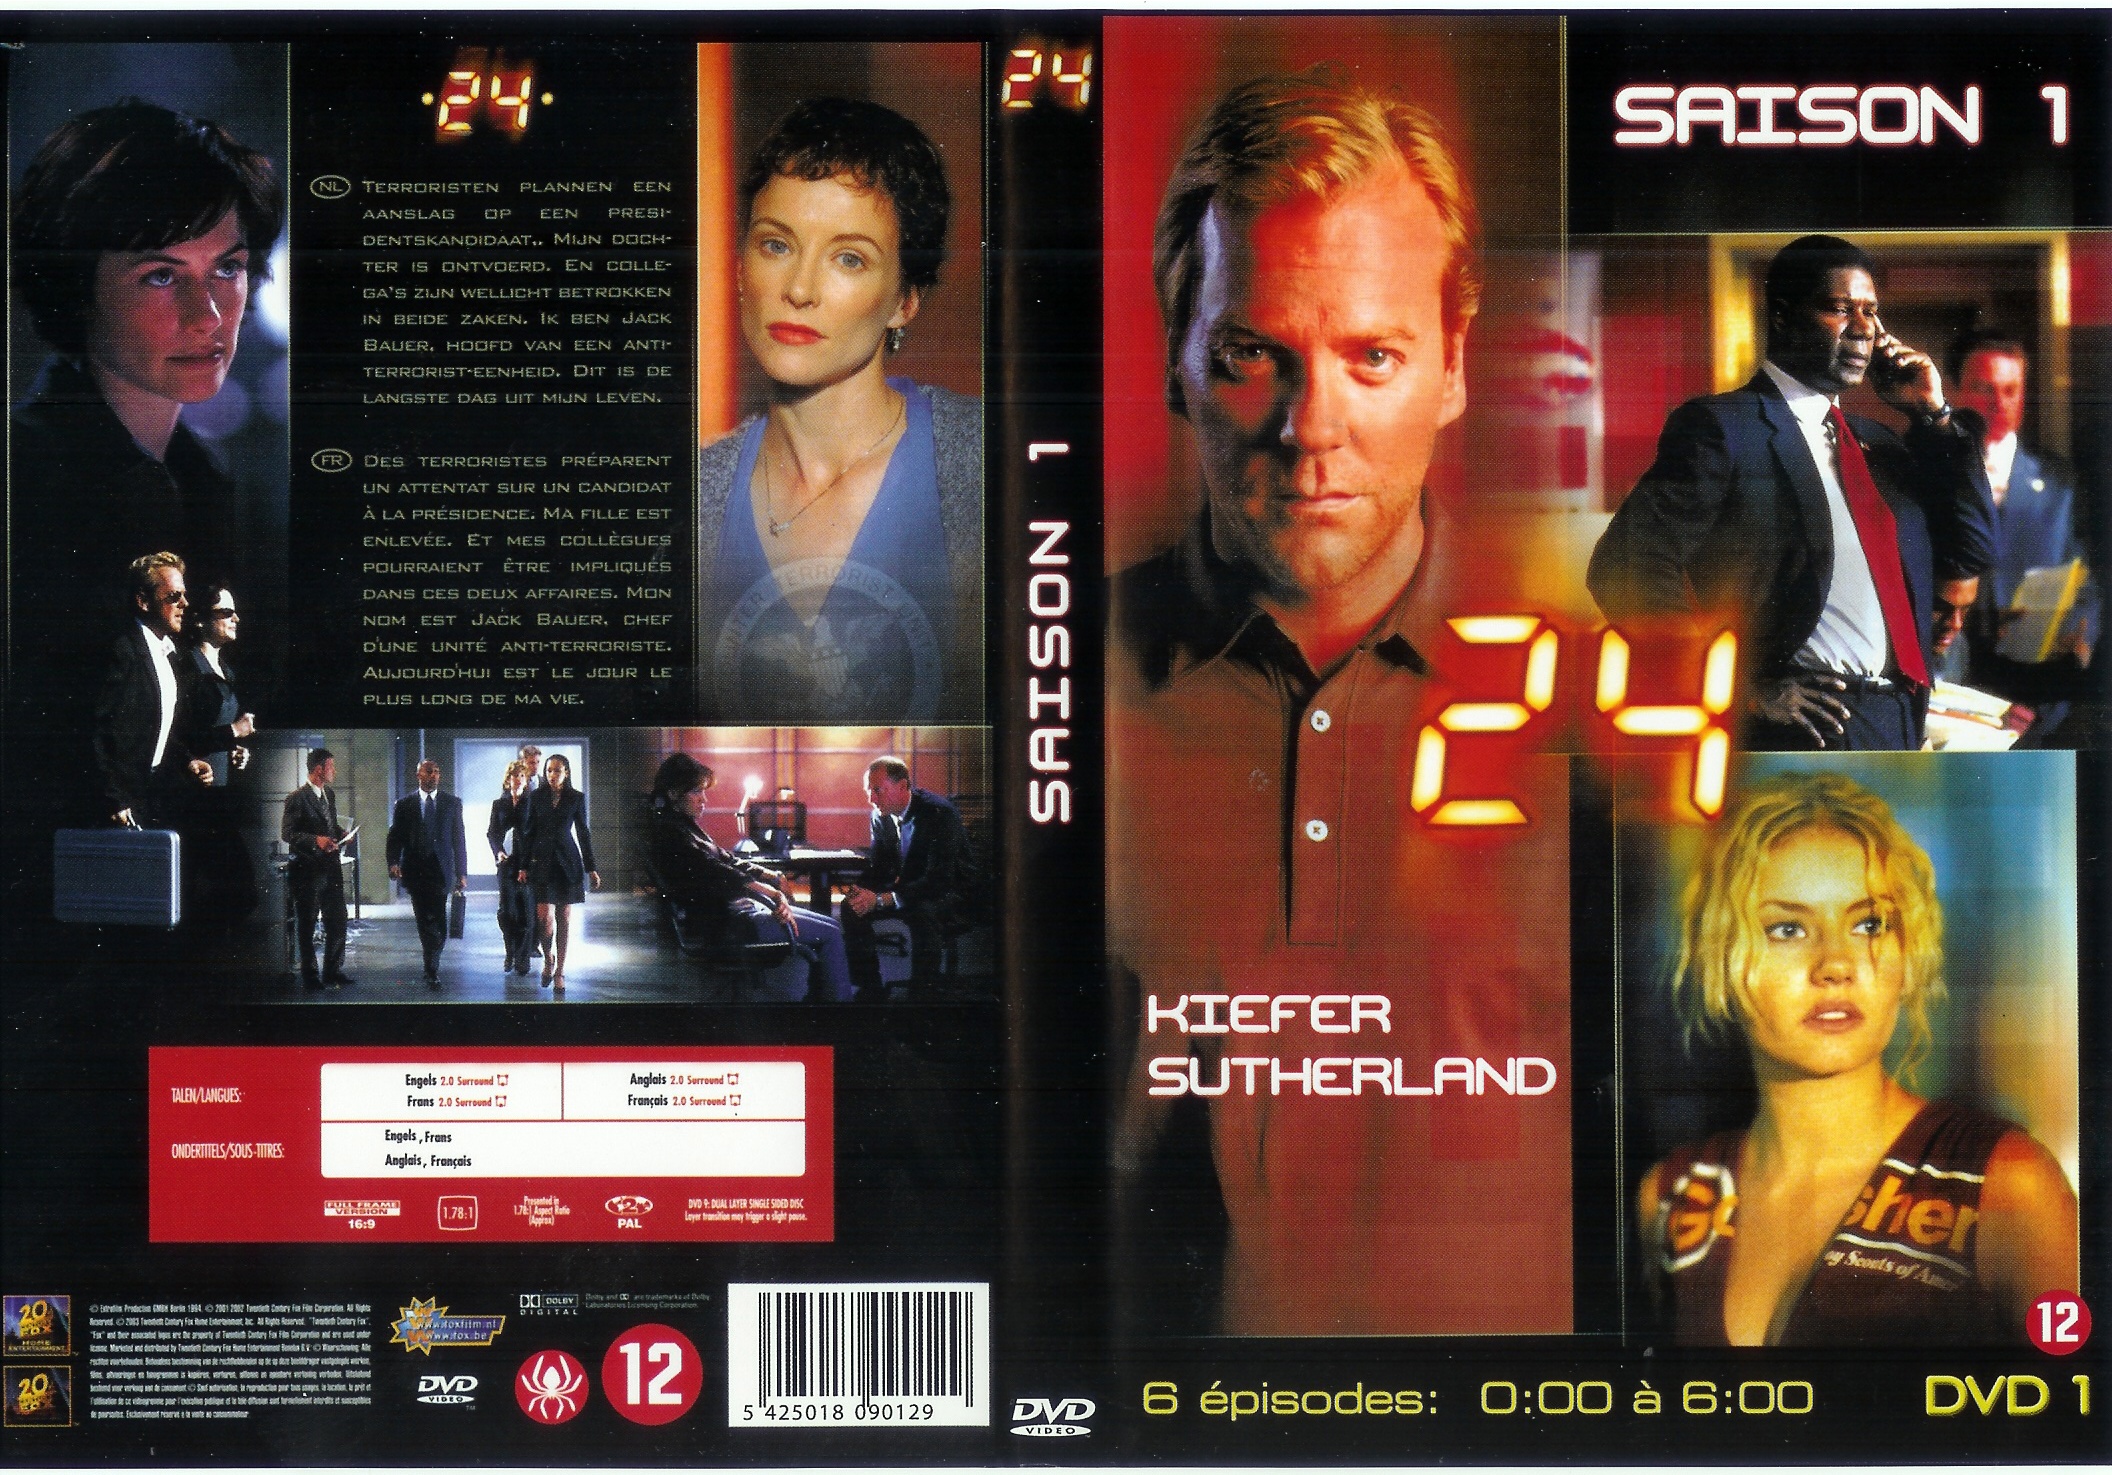 Jaquette DVD 24 heures chrono Saison 1 dvd 1 (coffret 4 dvd)